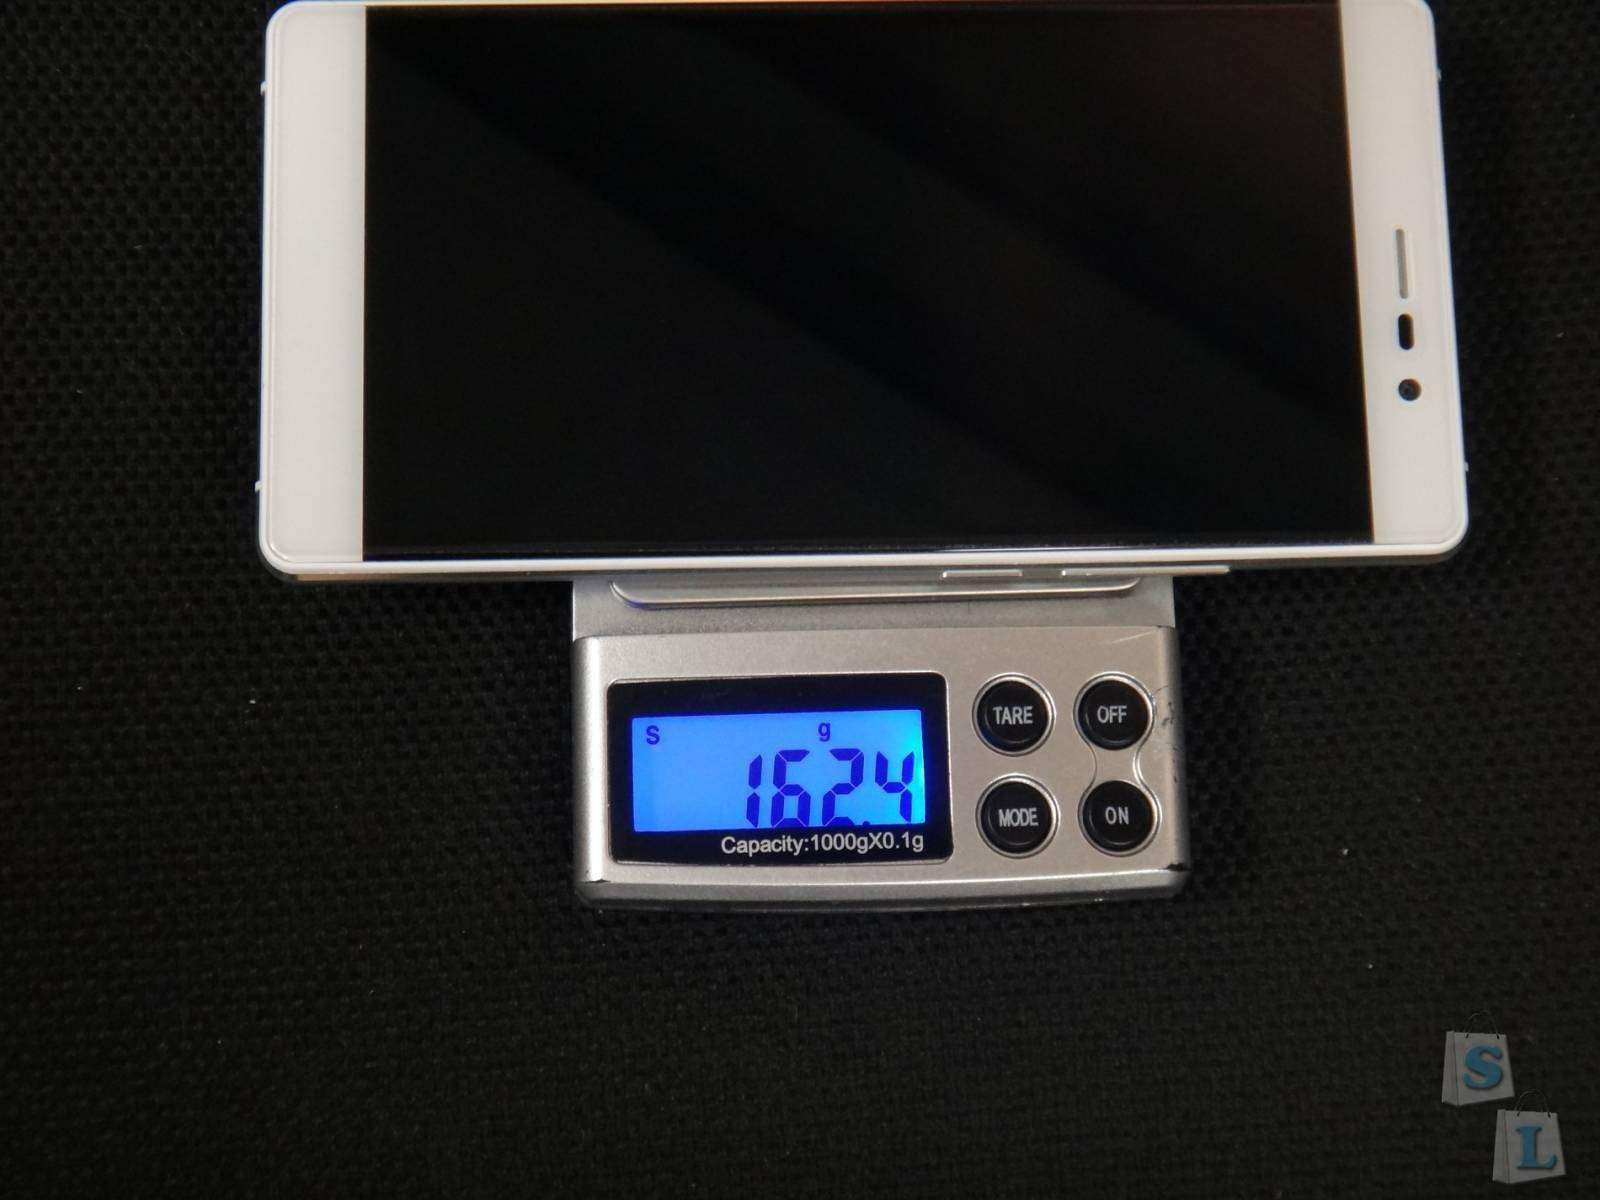 CooliCool: UMI FAIR MHAUMFR красивый бюджетник со сканером отпечатка пальца